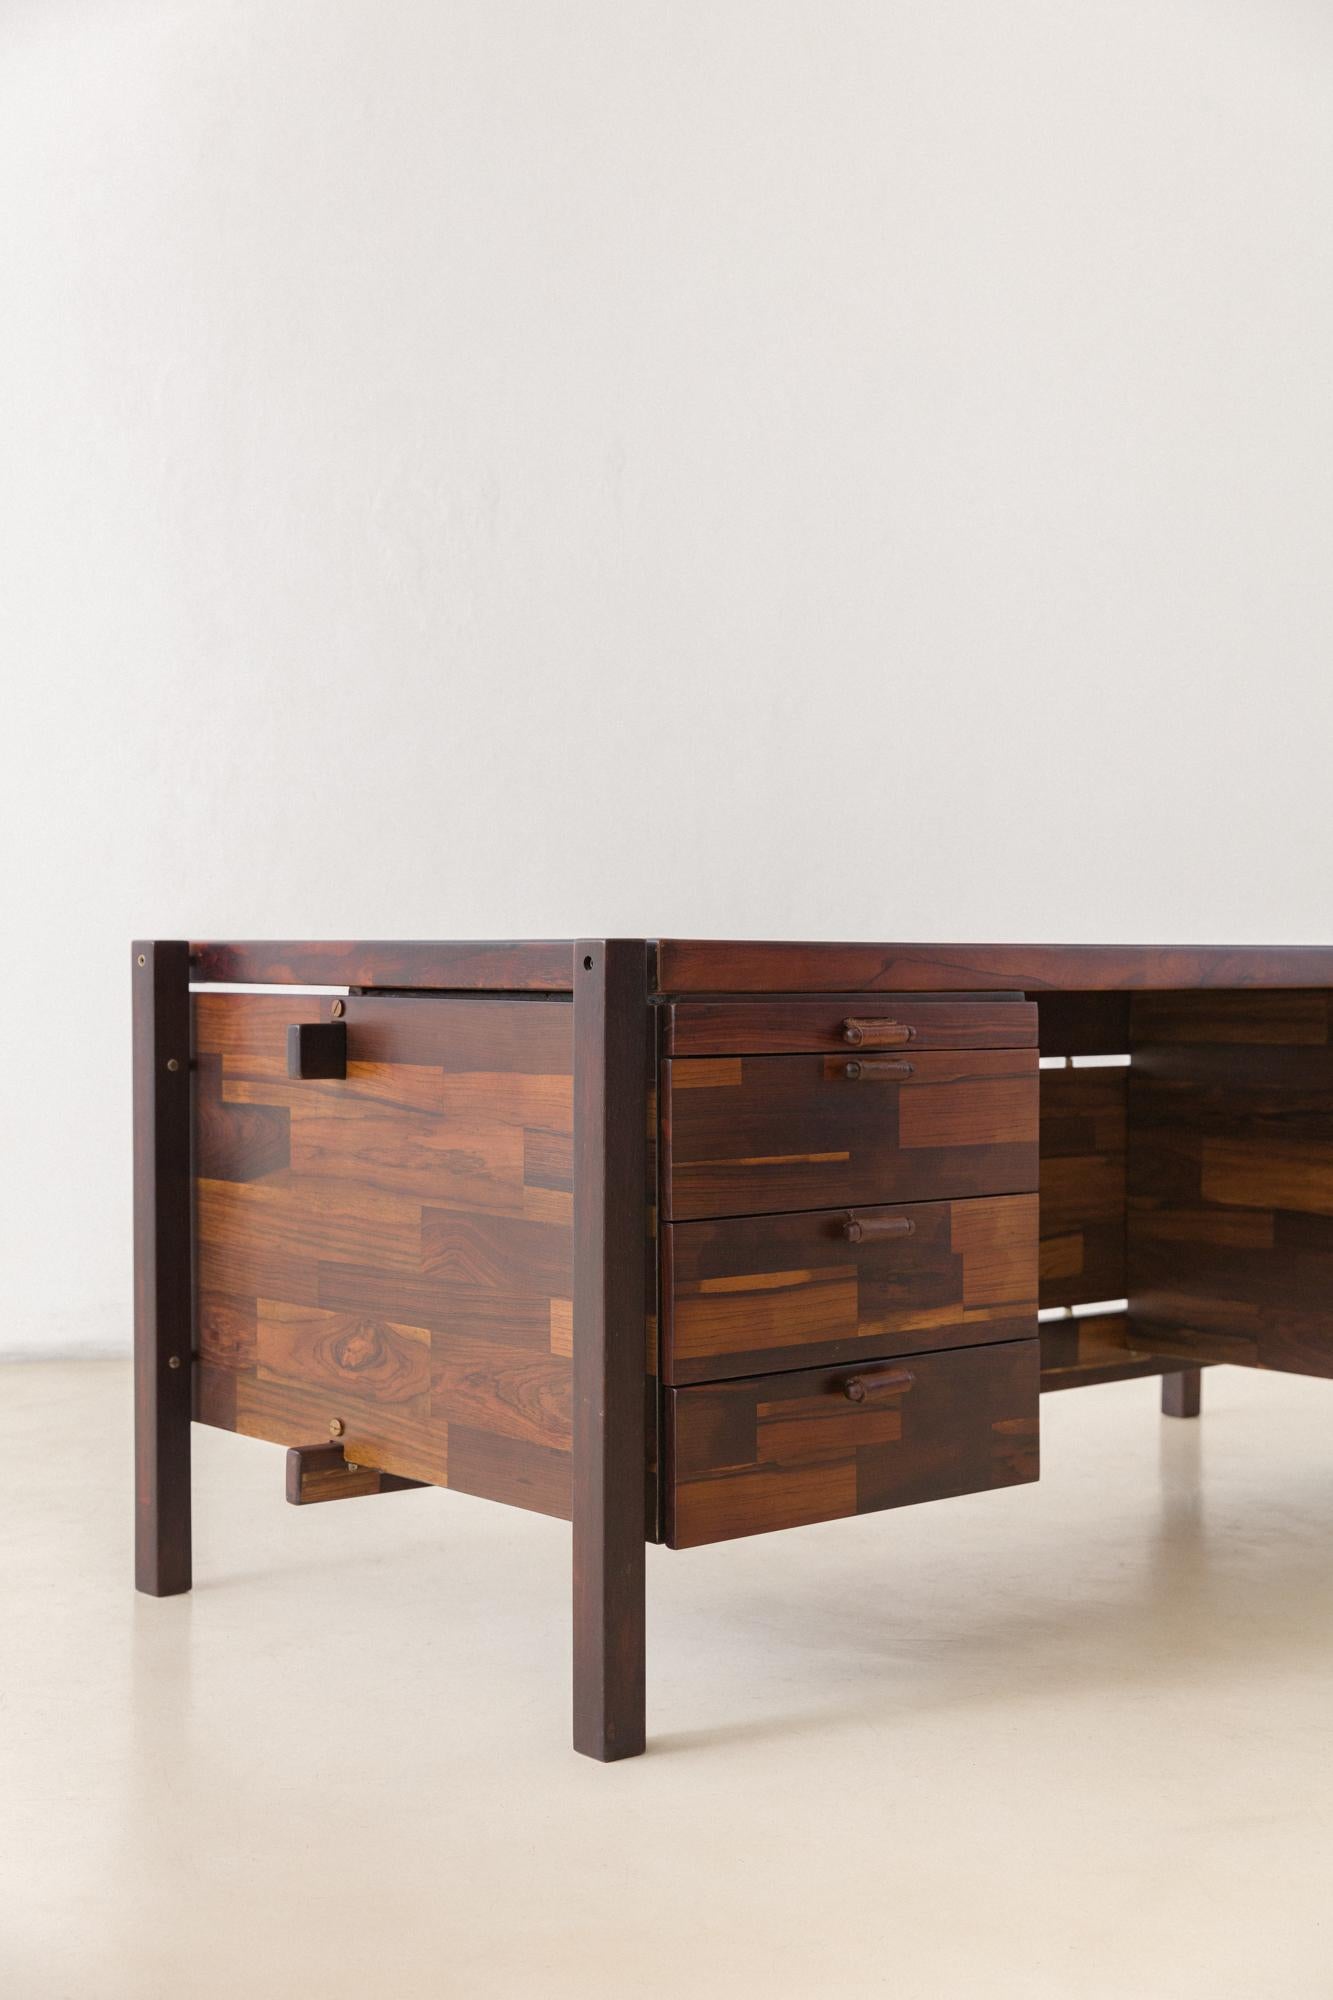 Rosewood Desk by Jorge Zalszupin, L'Atelier, 1960s, Brazilian Midcentury Modern 3